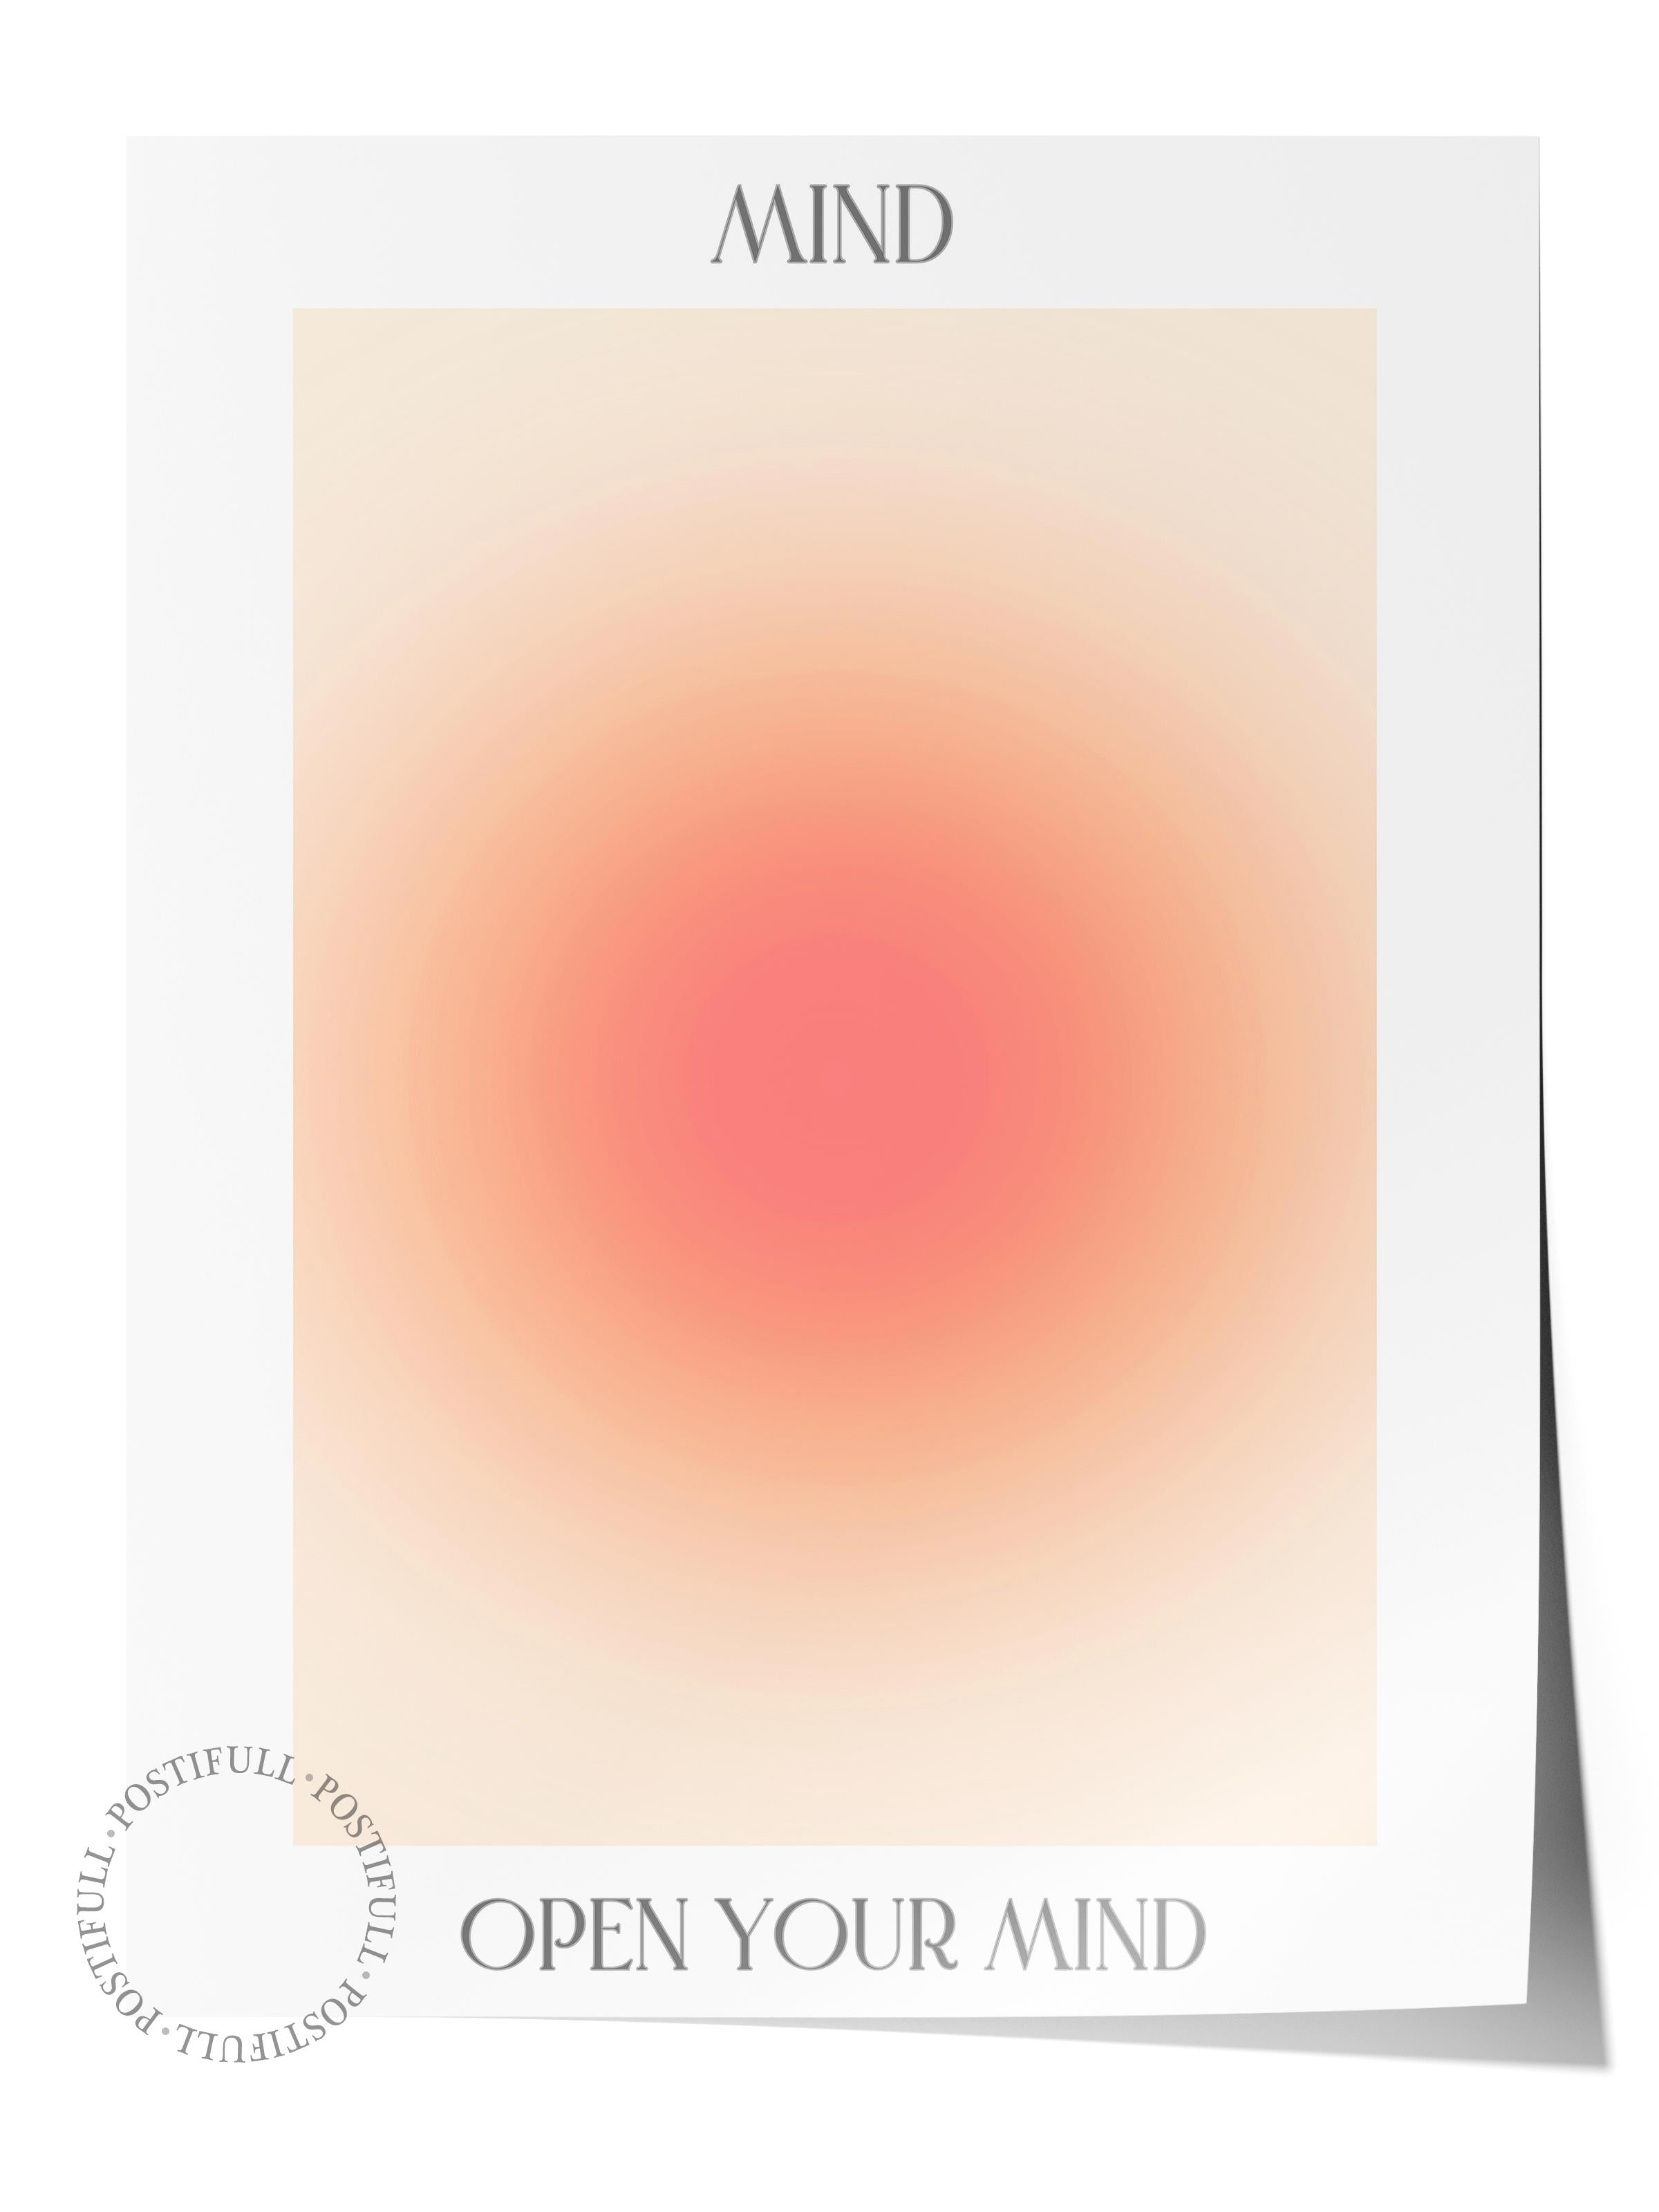 Çerçevesiz Poster, Aura Serisi NO:24 - Mind, Open Your Mind - Turuncu Daire, Melek Numaraları